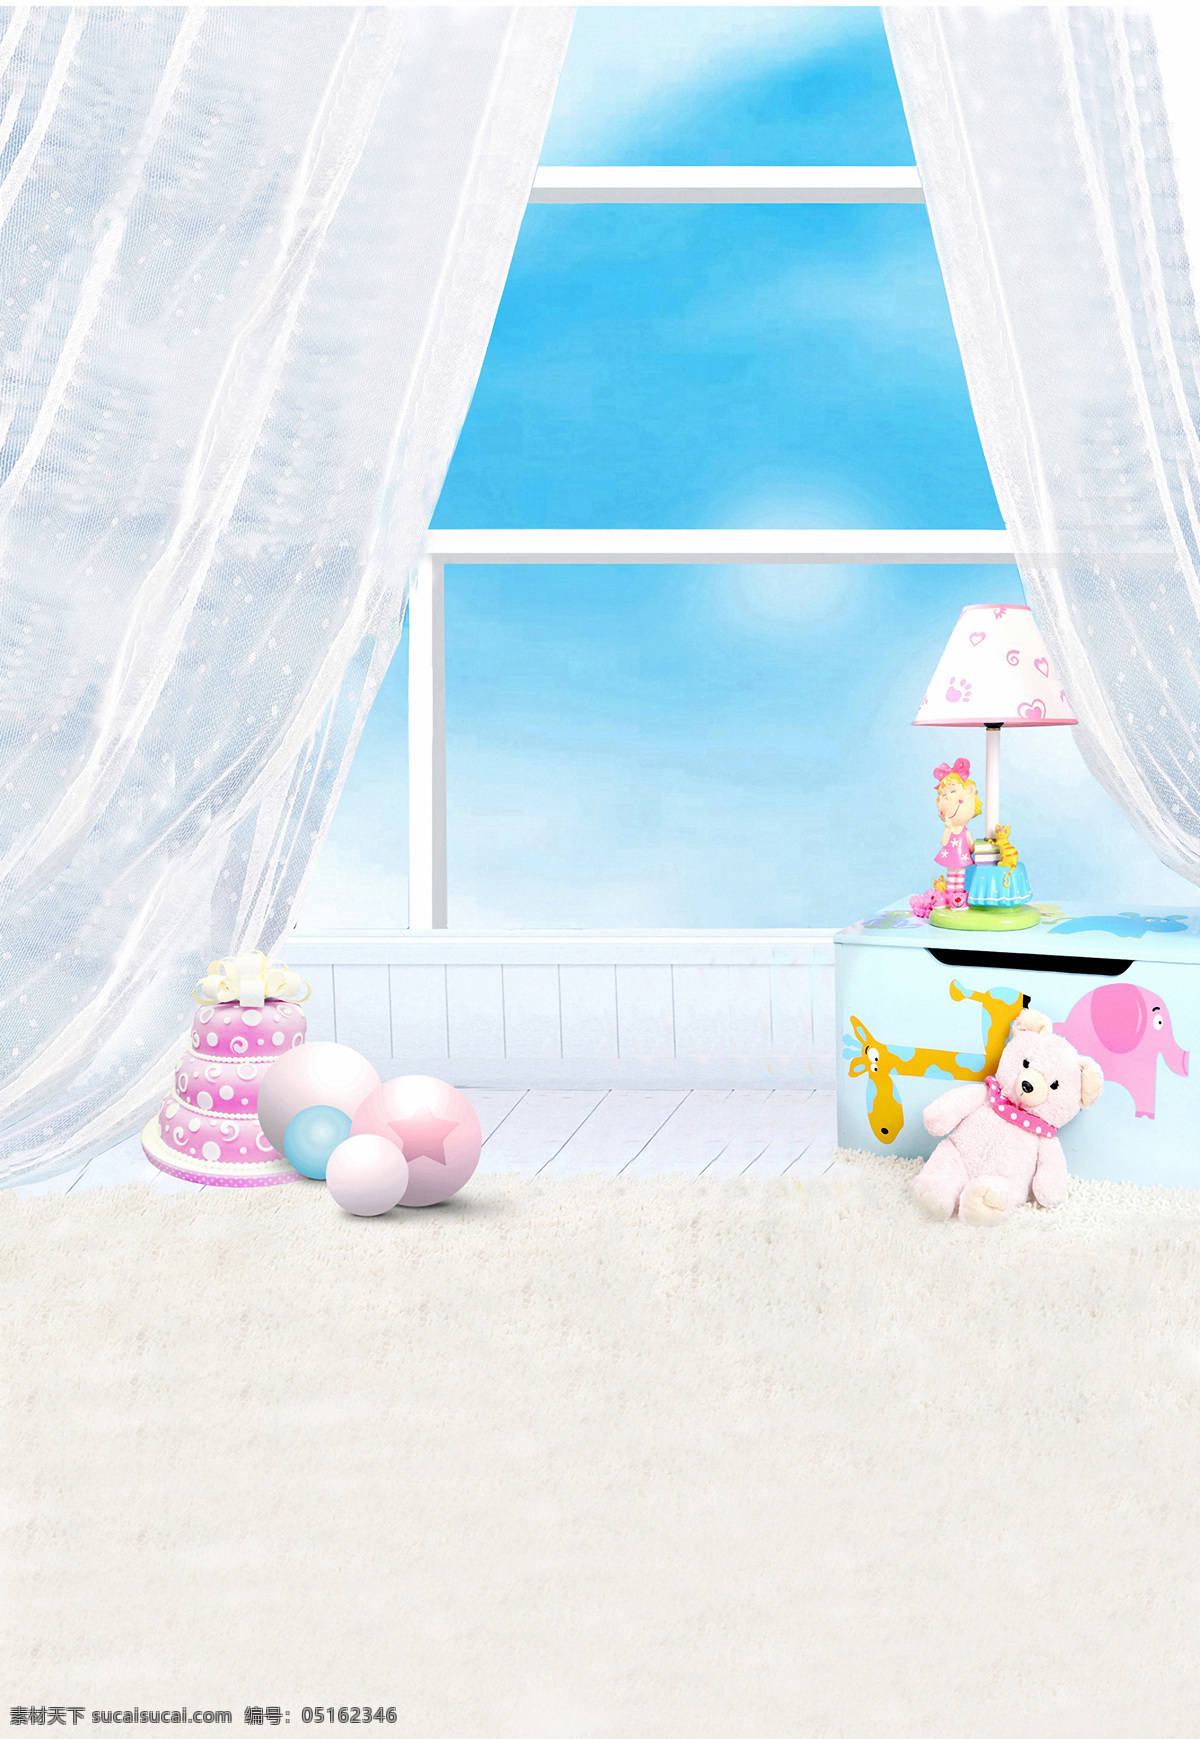 卡通 小屋 儿童 影楼 高清晰 背景 图 窗户 台灯 小熊 大图 桌子 蛋糕小球 背景图片